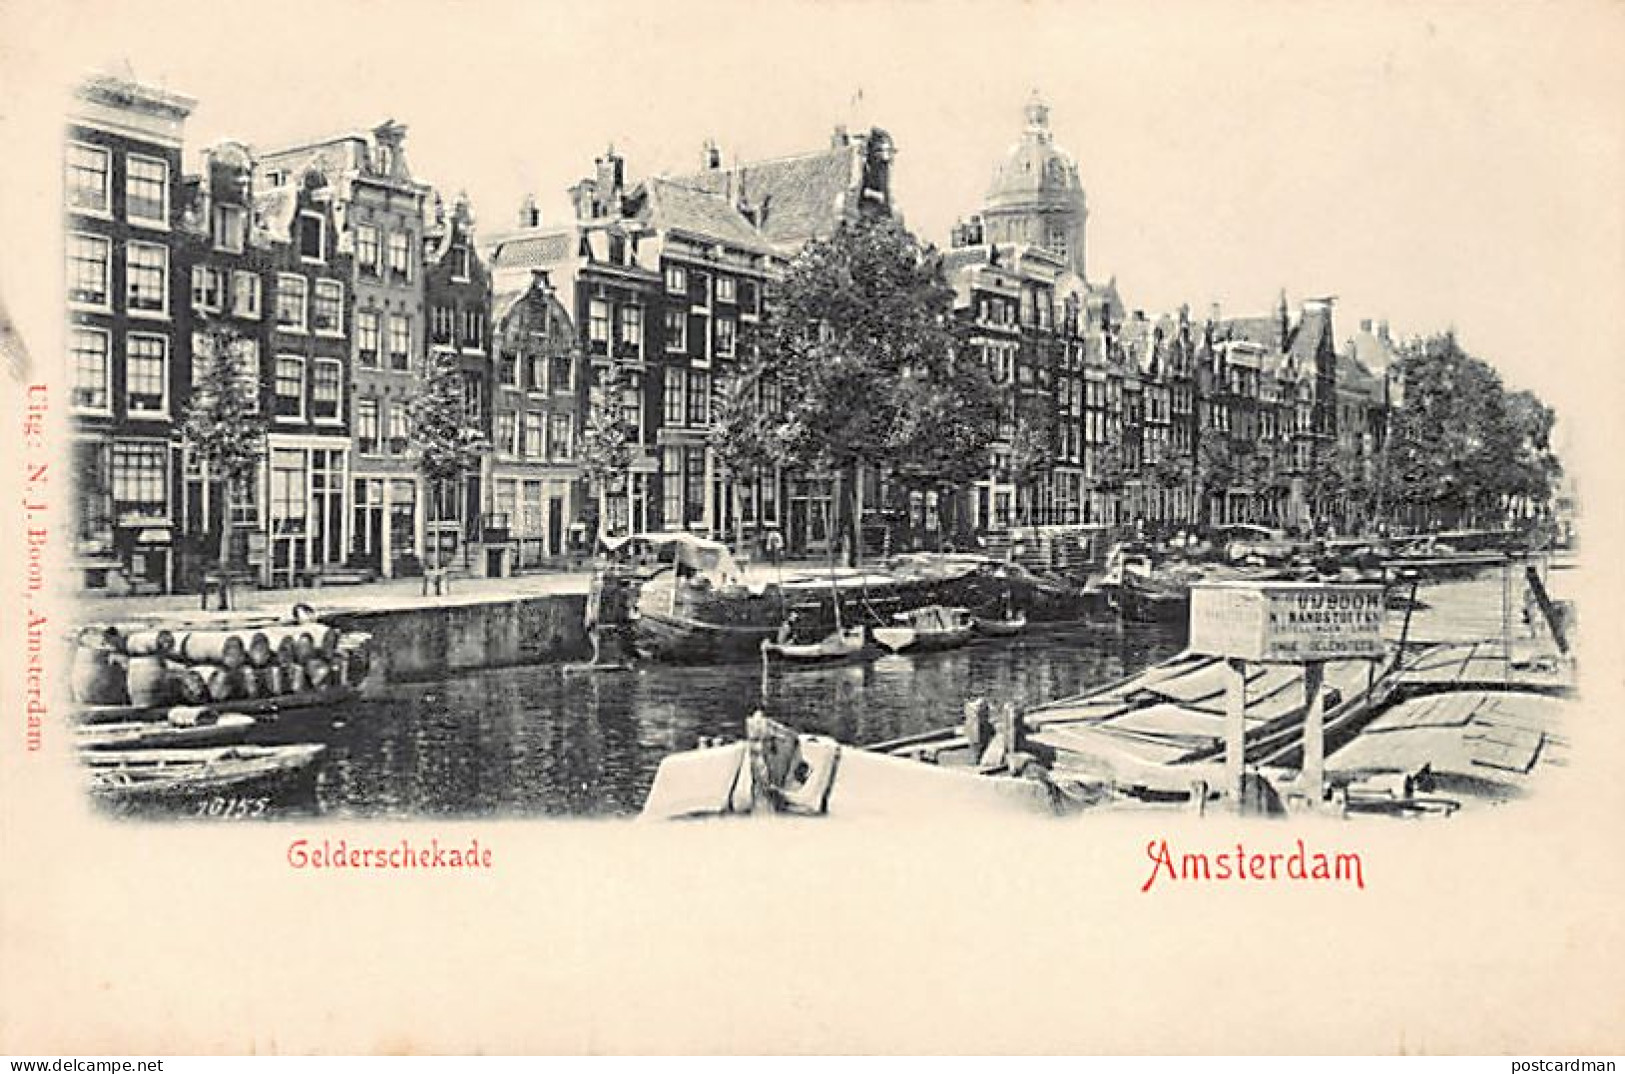 AMSTERDAM - Reliëf Ansichtkaart - Gelderschekade - Uitg. N. J. Boon  - Amsterdam